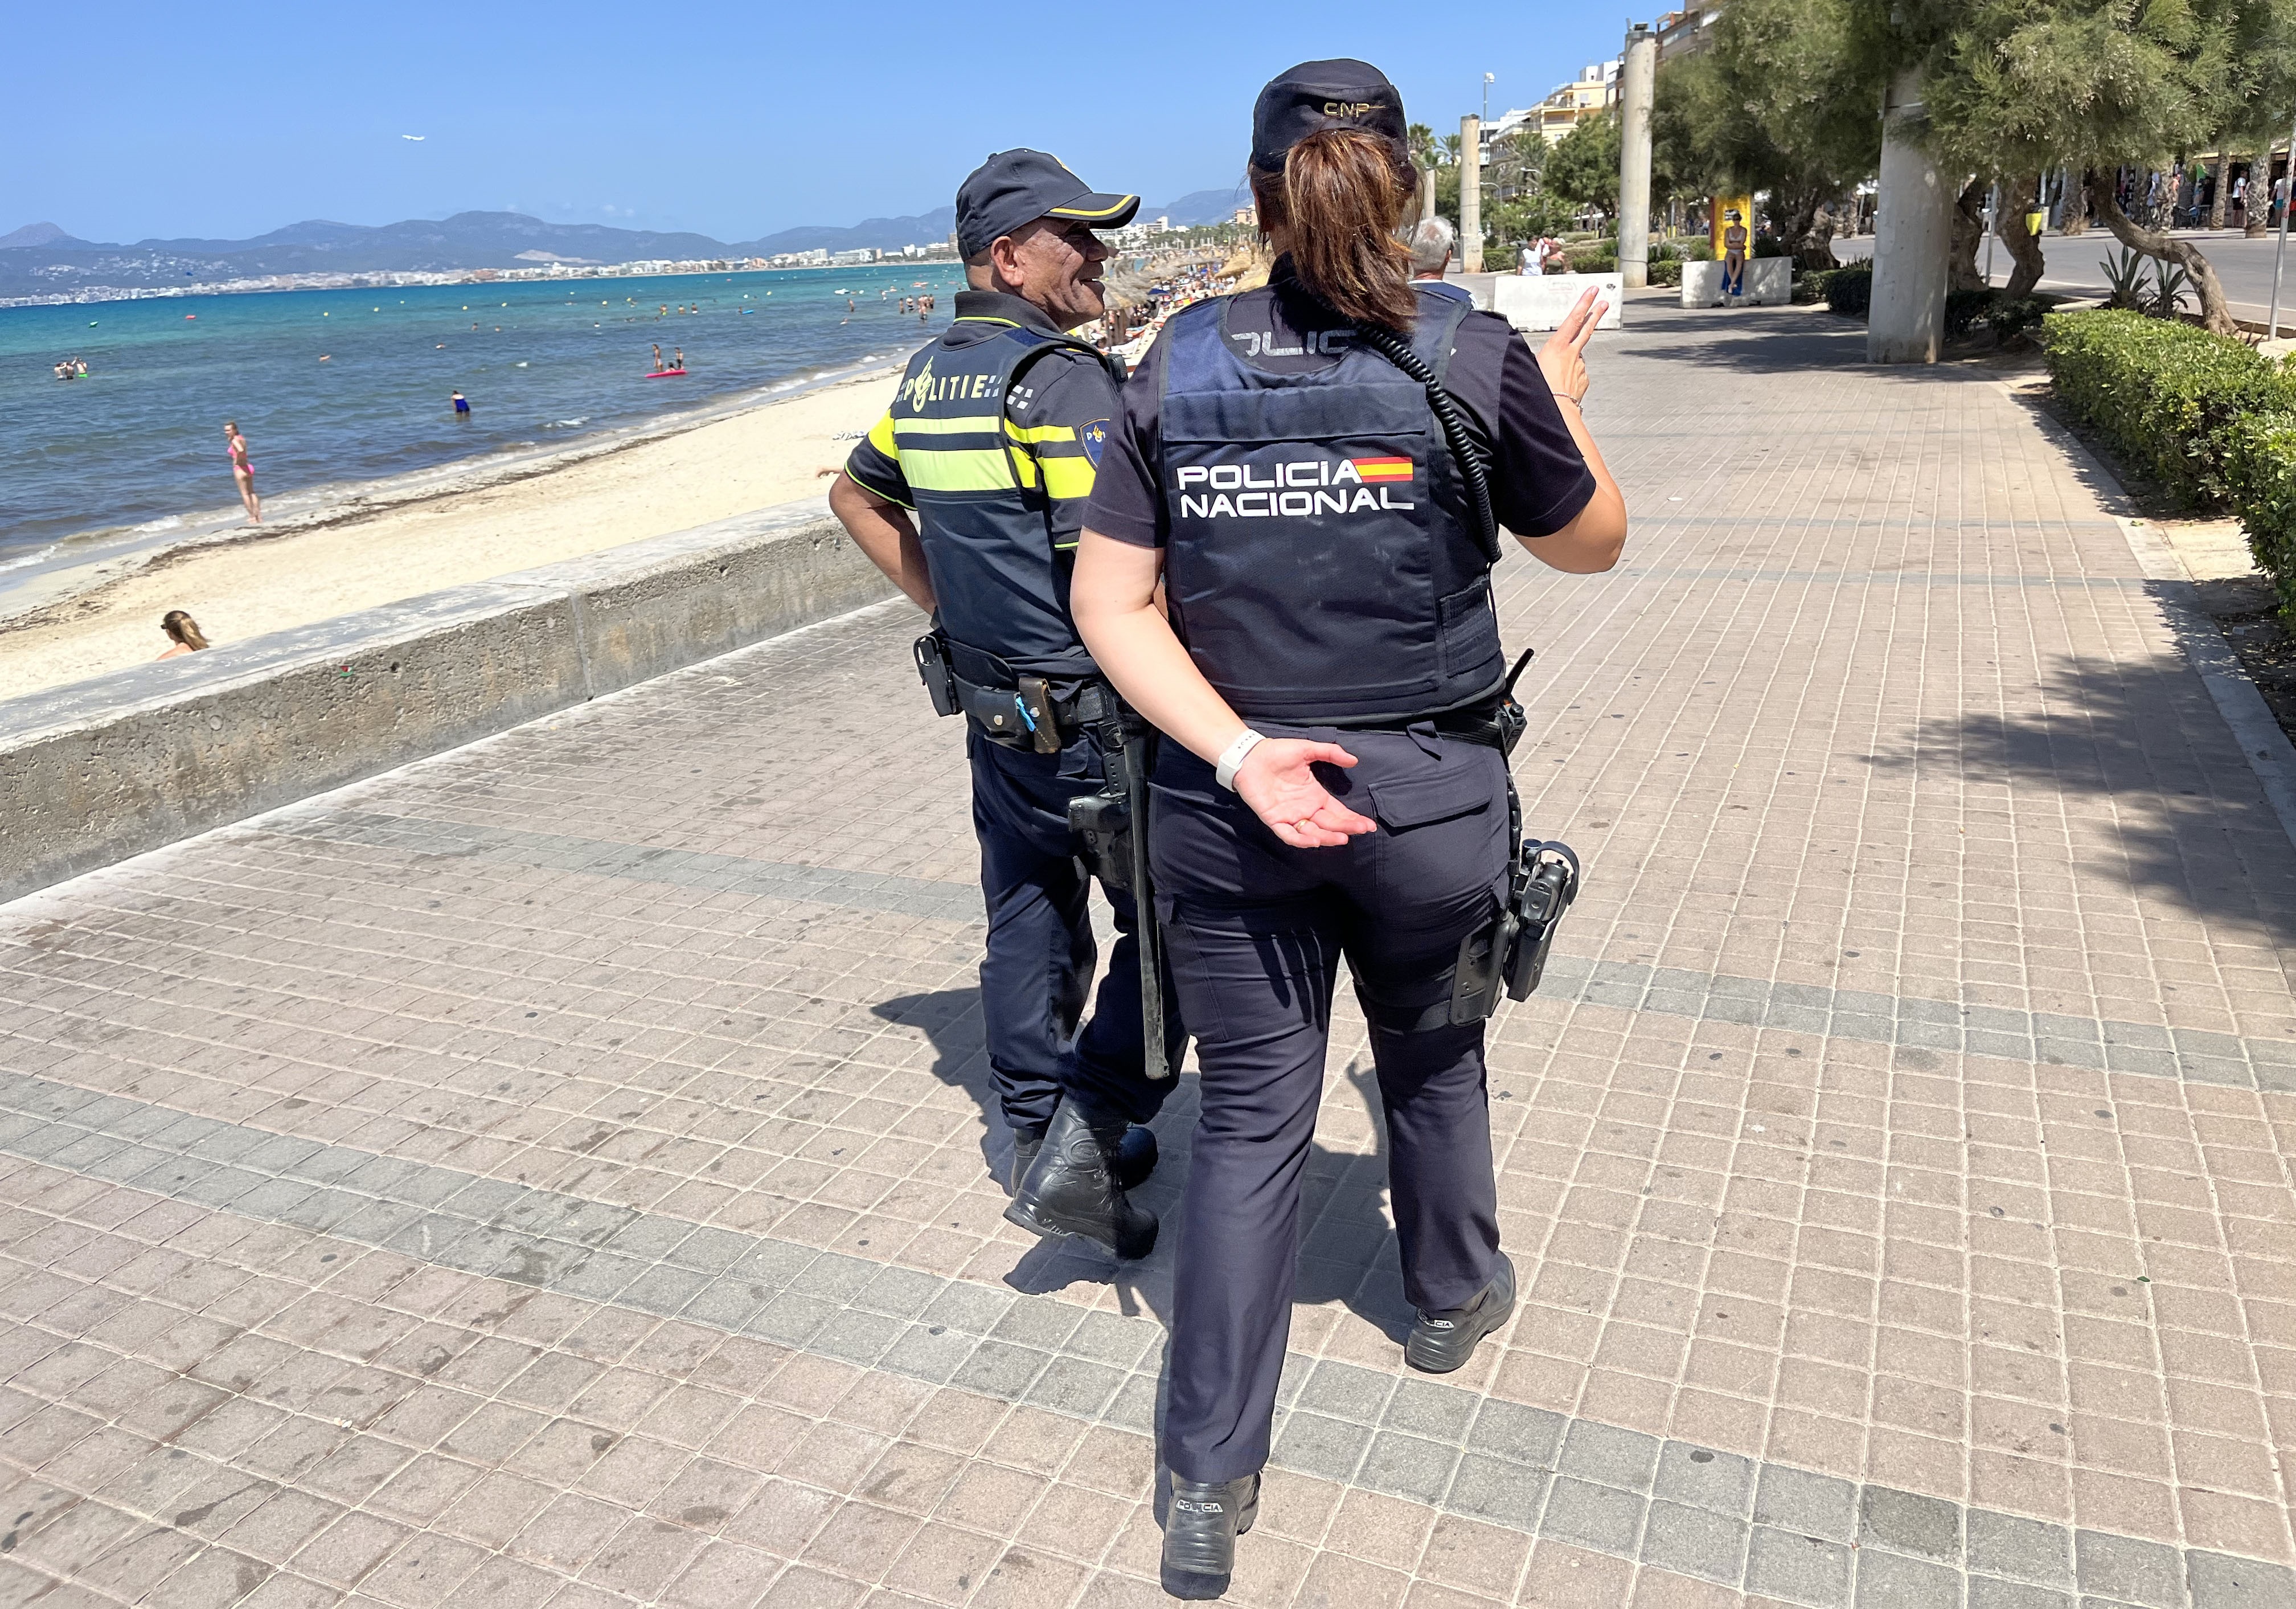 Police patrol at Mallorca